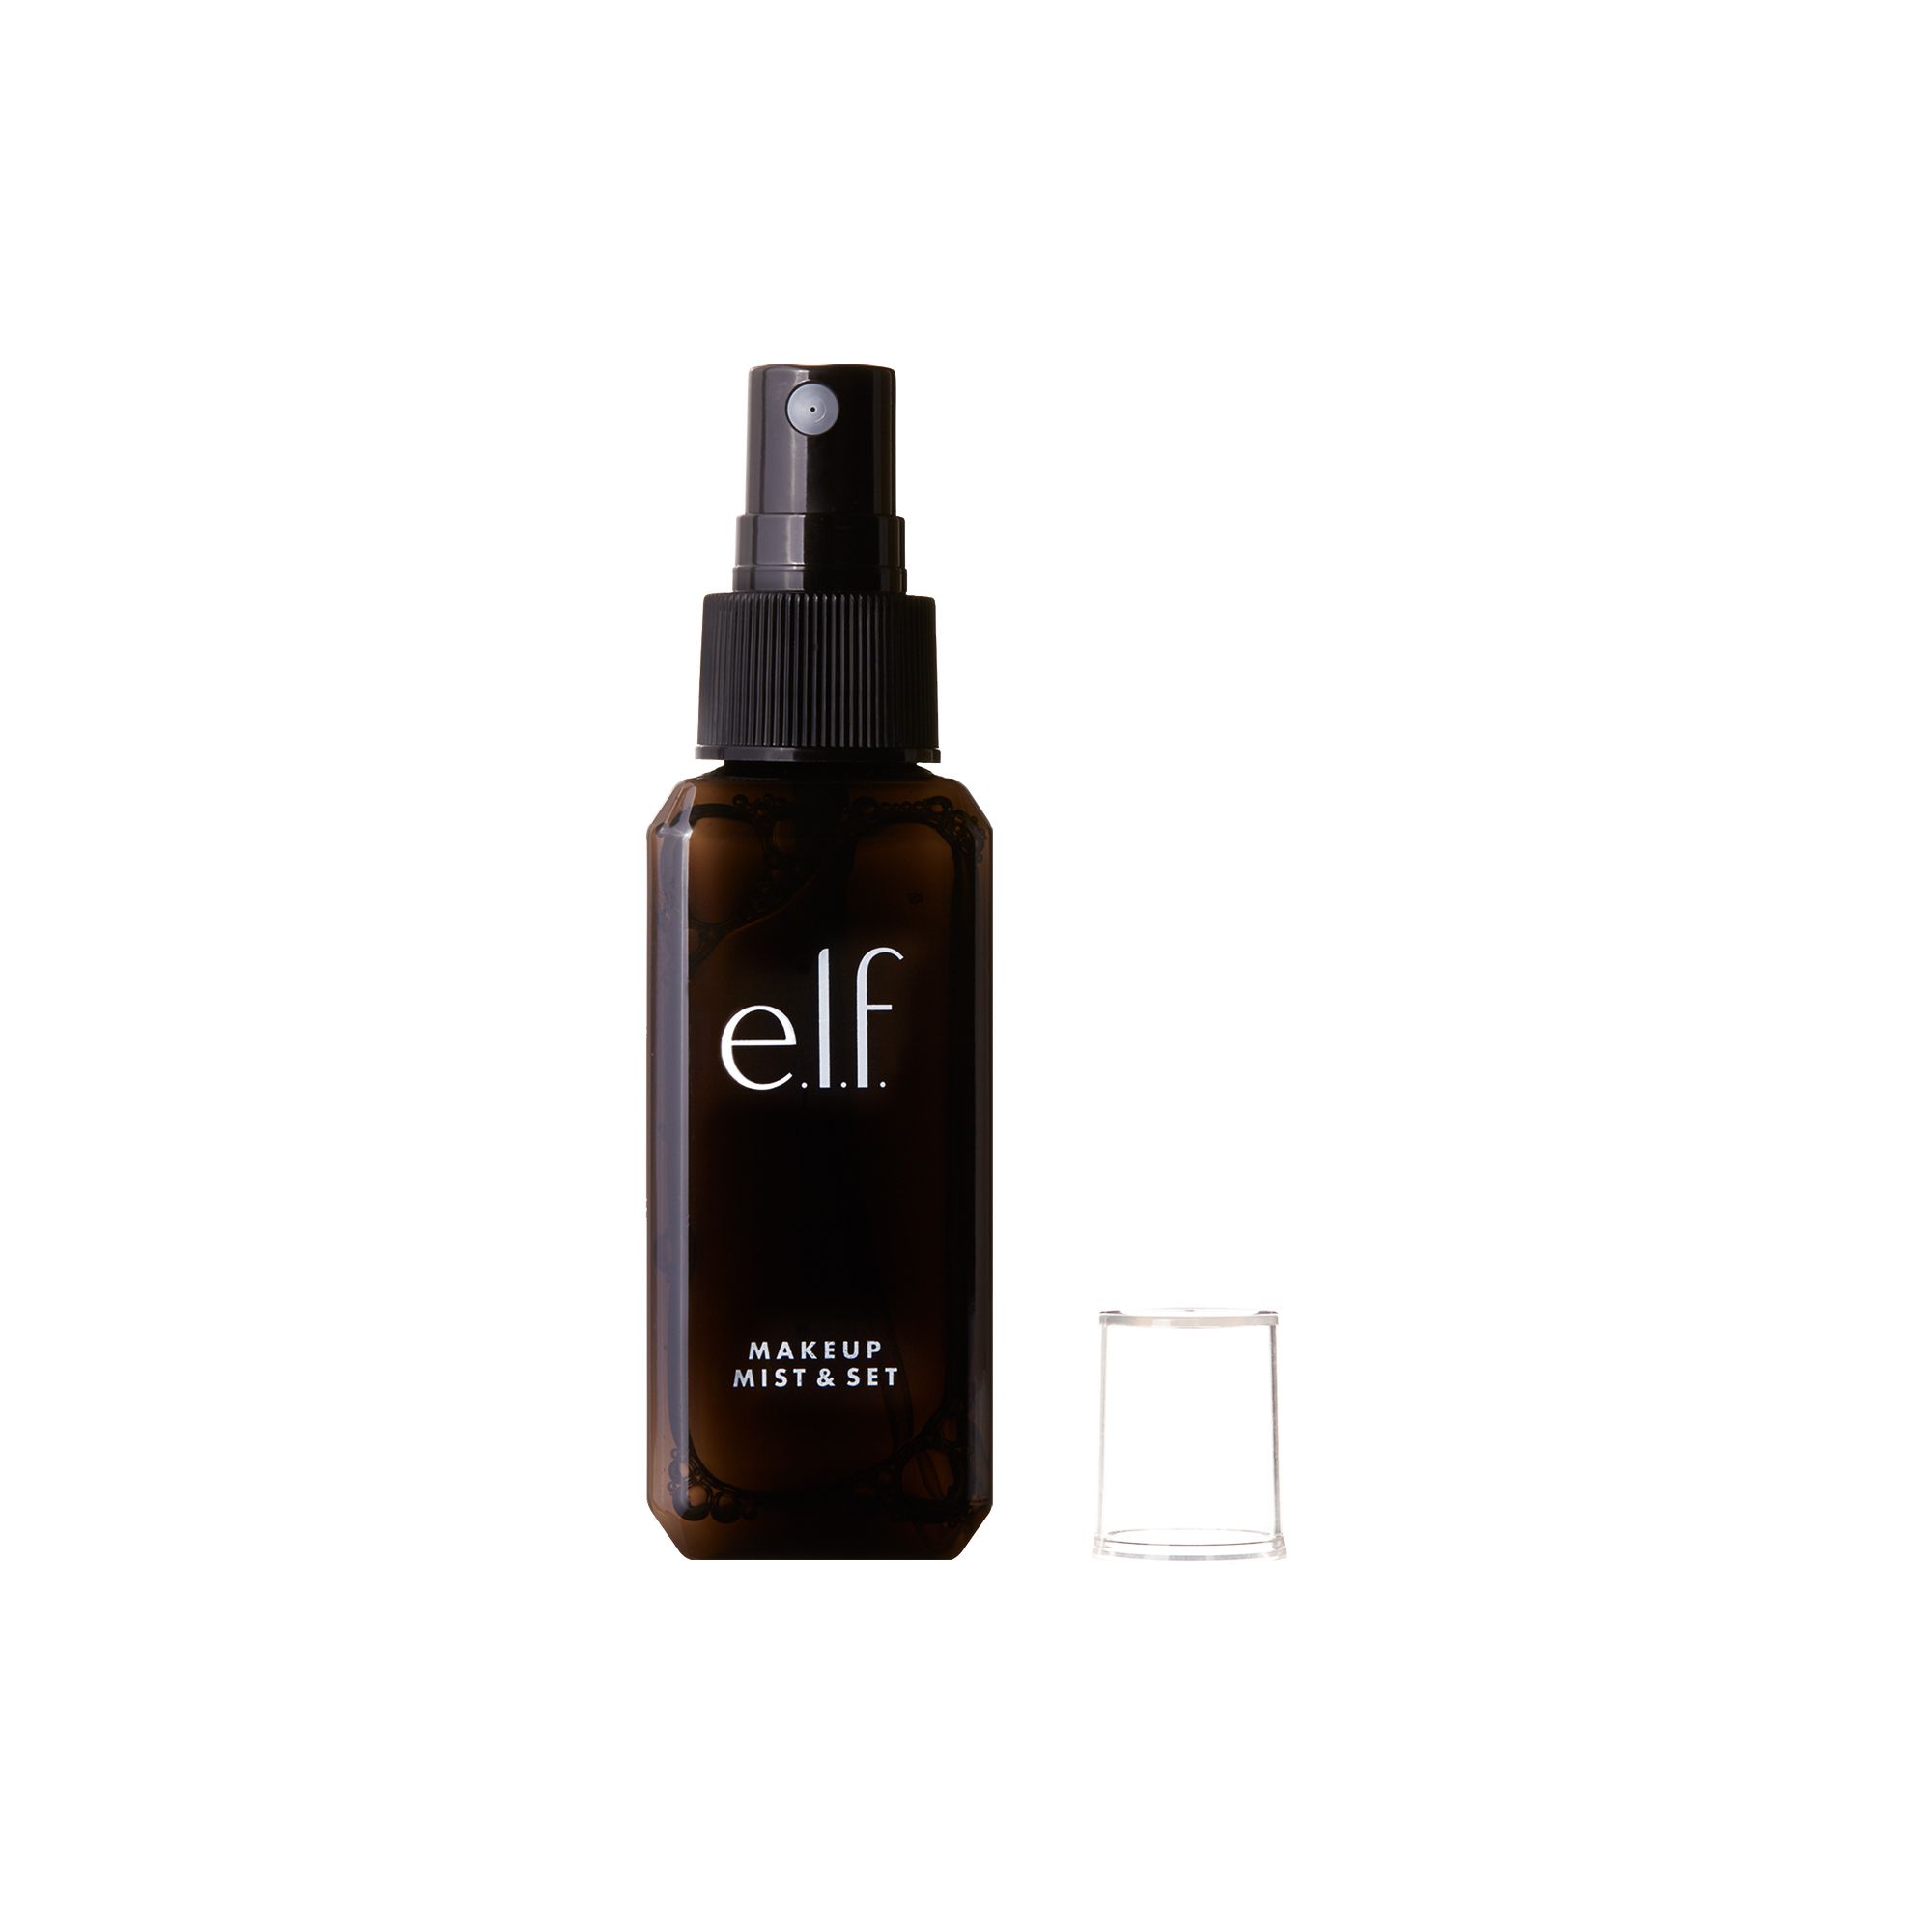 e.l.f. Makeup Mist & Set Spray, 2.02 fl oz | Walmart (US)